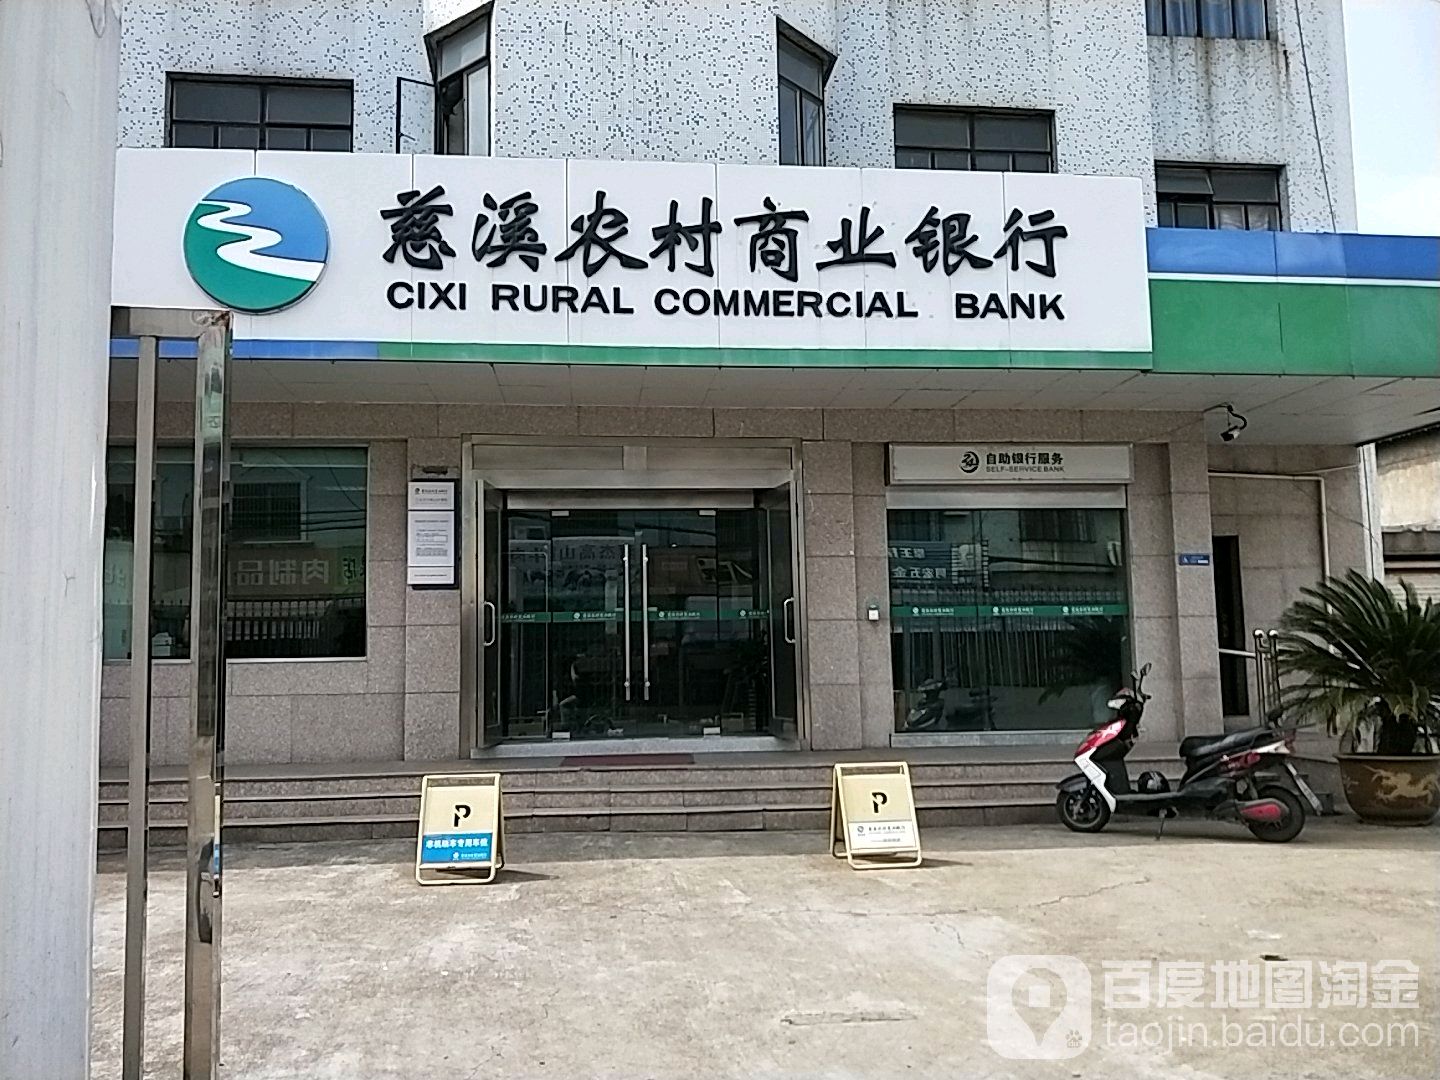 慈溪市農村商業銀行24小時自助銀行